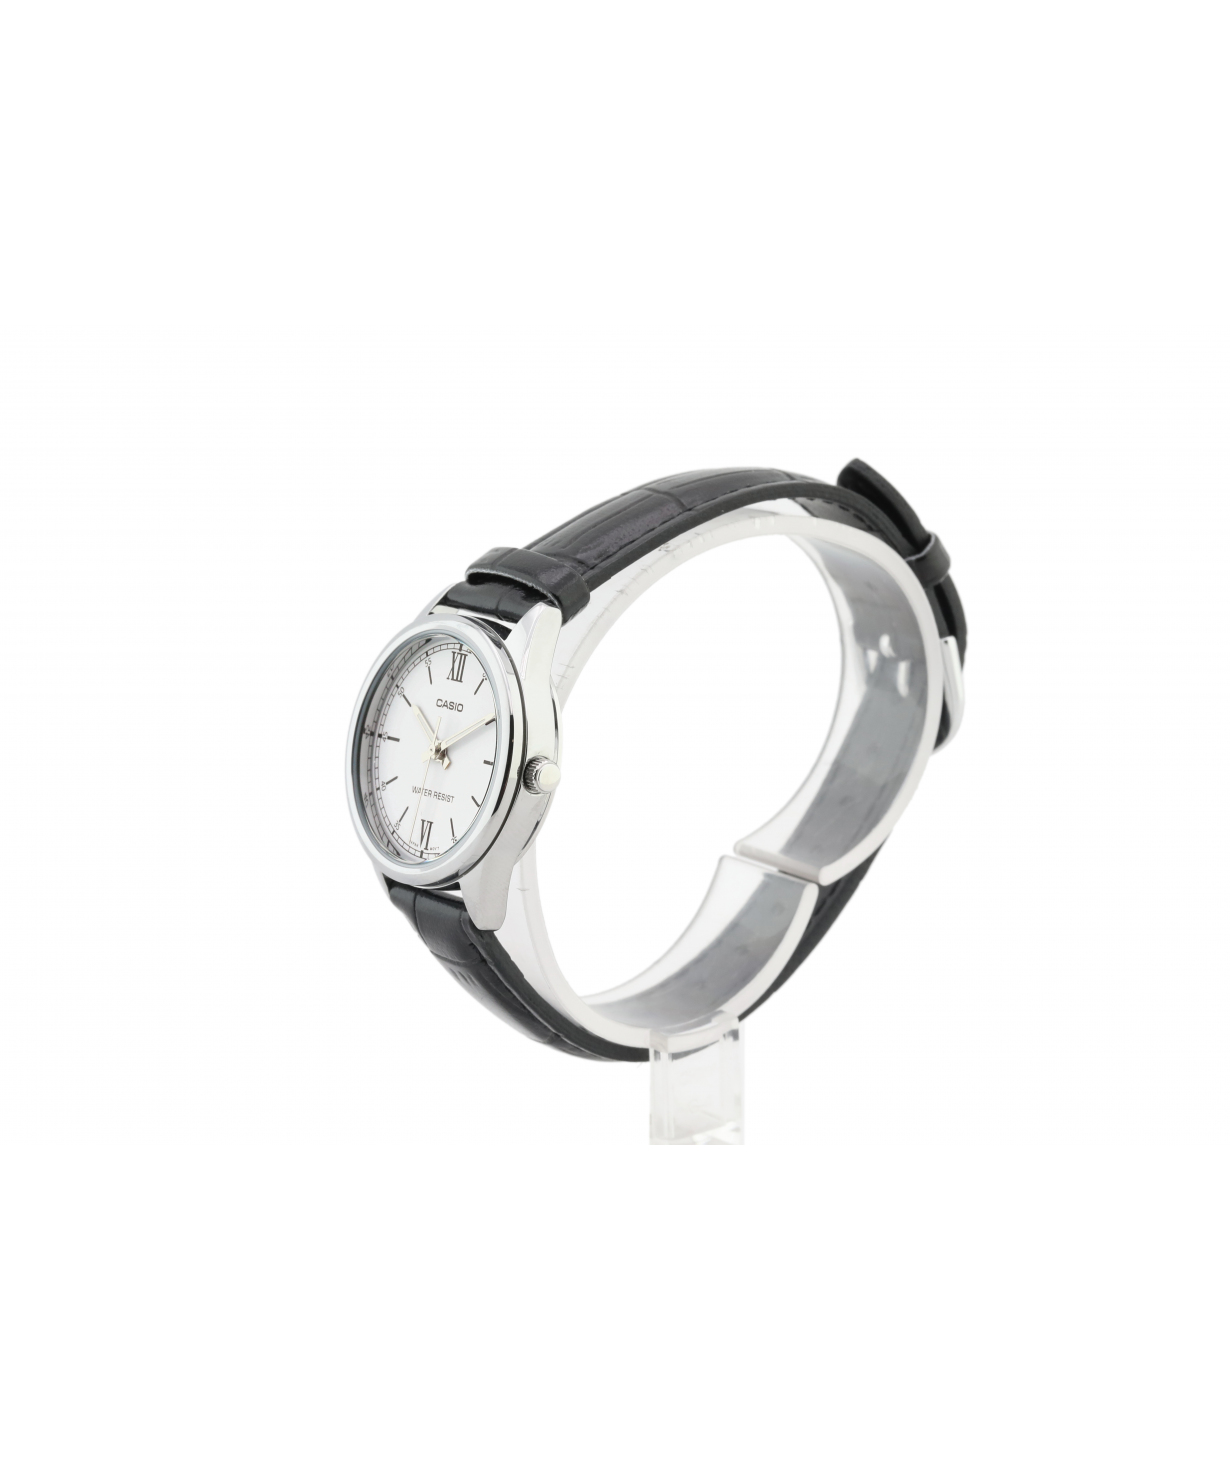 Ժամացույց  «Casio» ձեռքի  LTP-V005L-7B2UDF